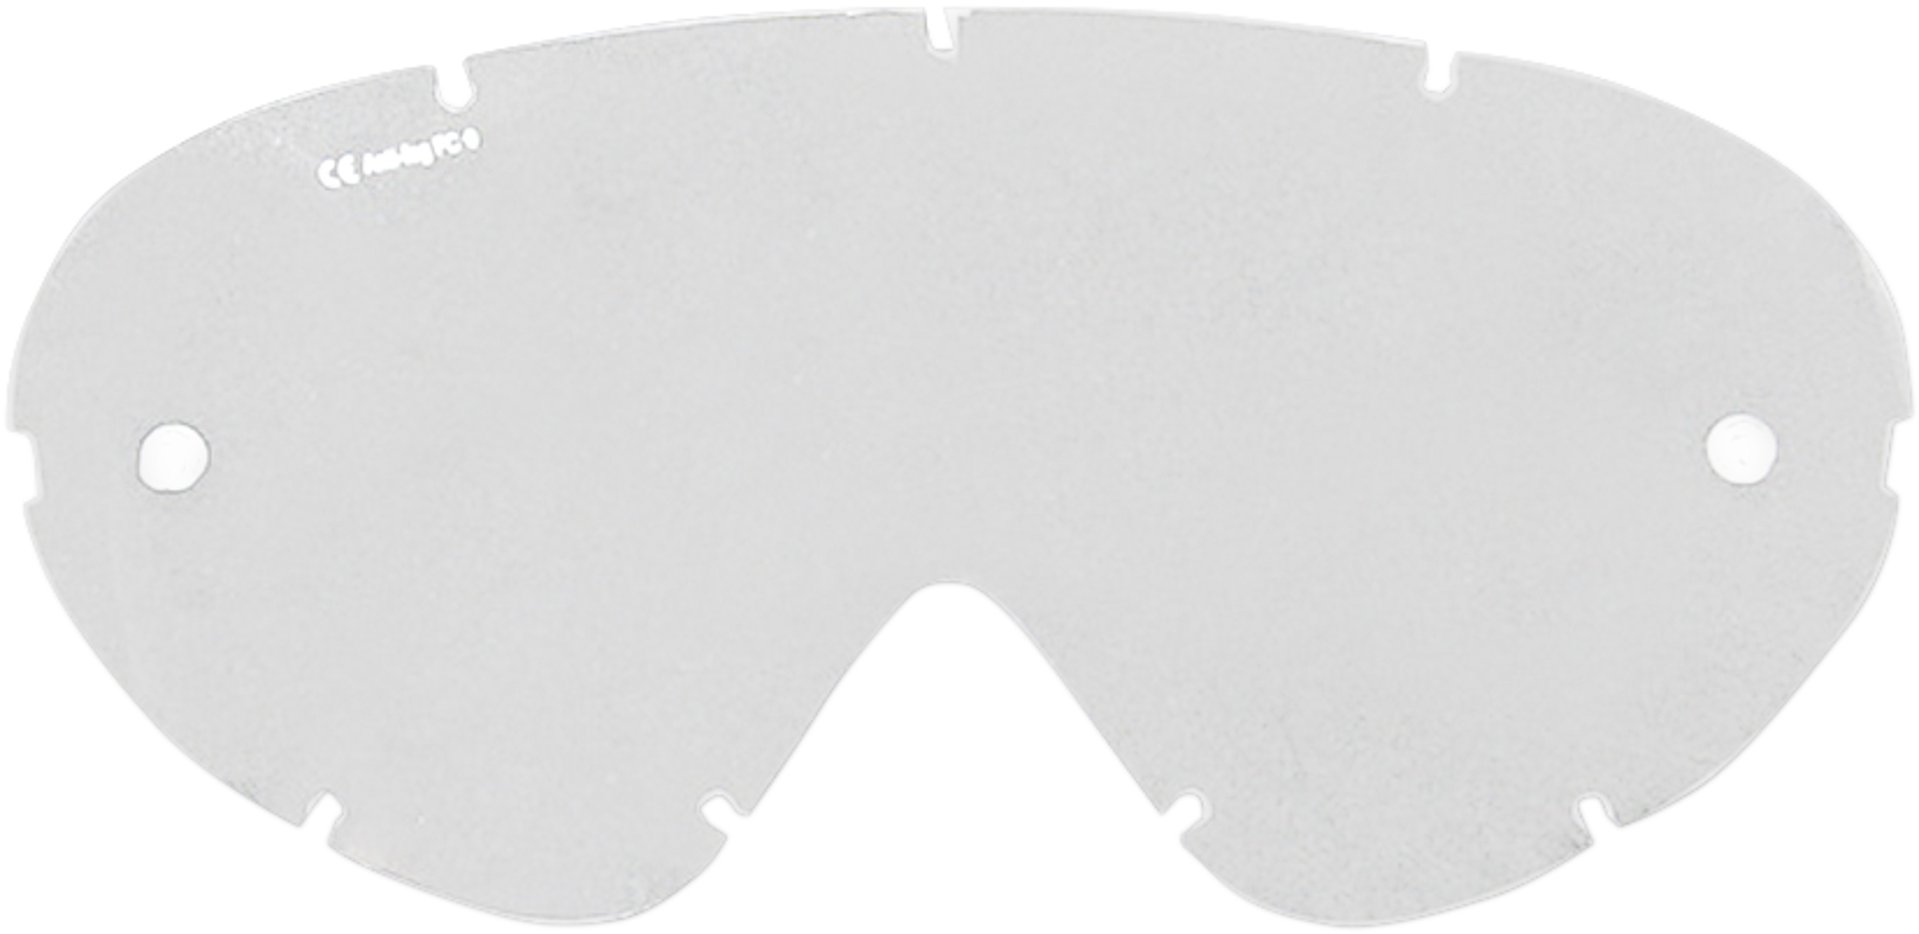 Moose Racing Qualifier Jeunes Lunettes lentilles de remplacement transparent unique taille